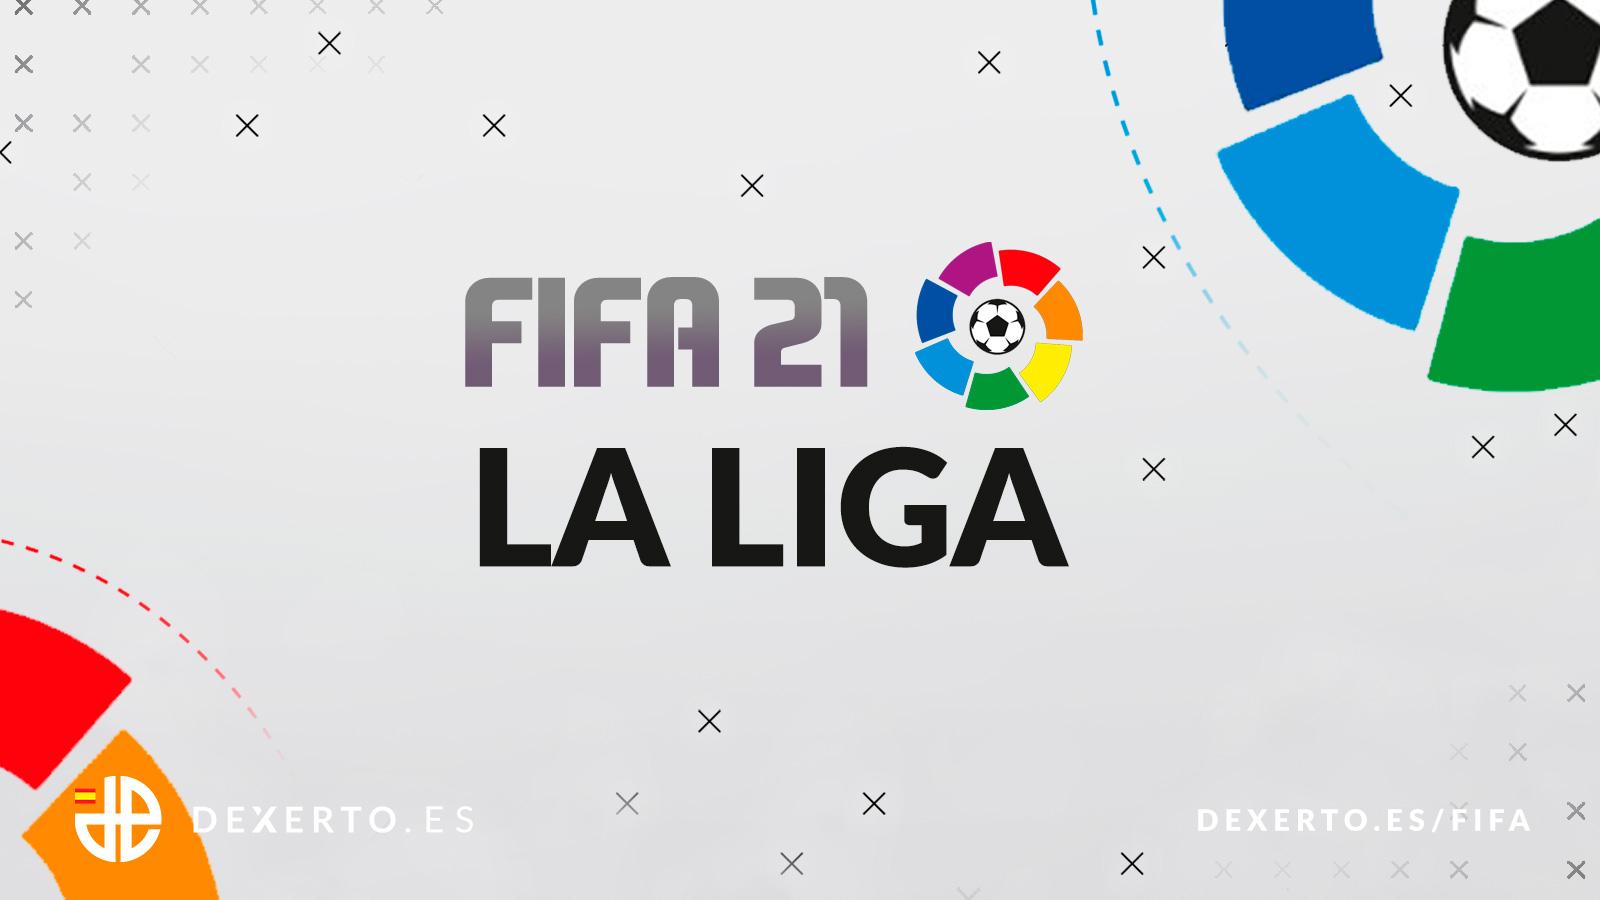 LaLiga en FIFA 21